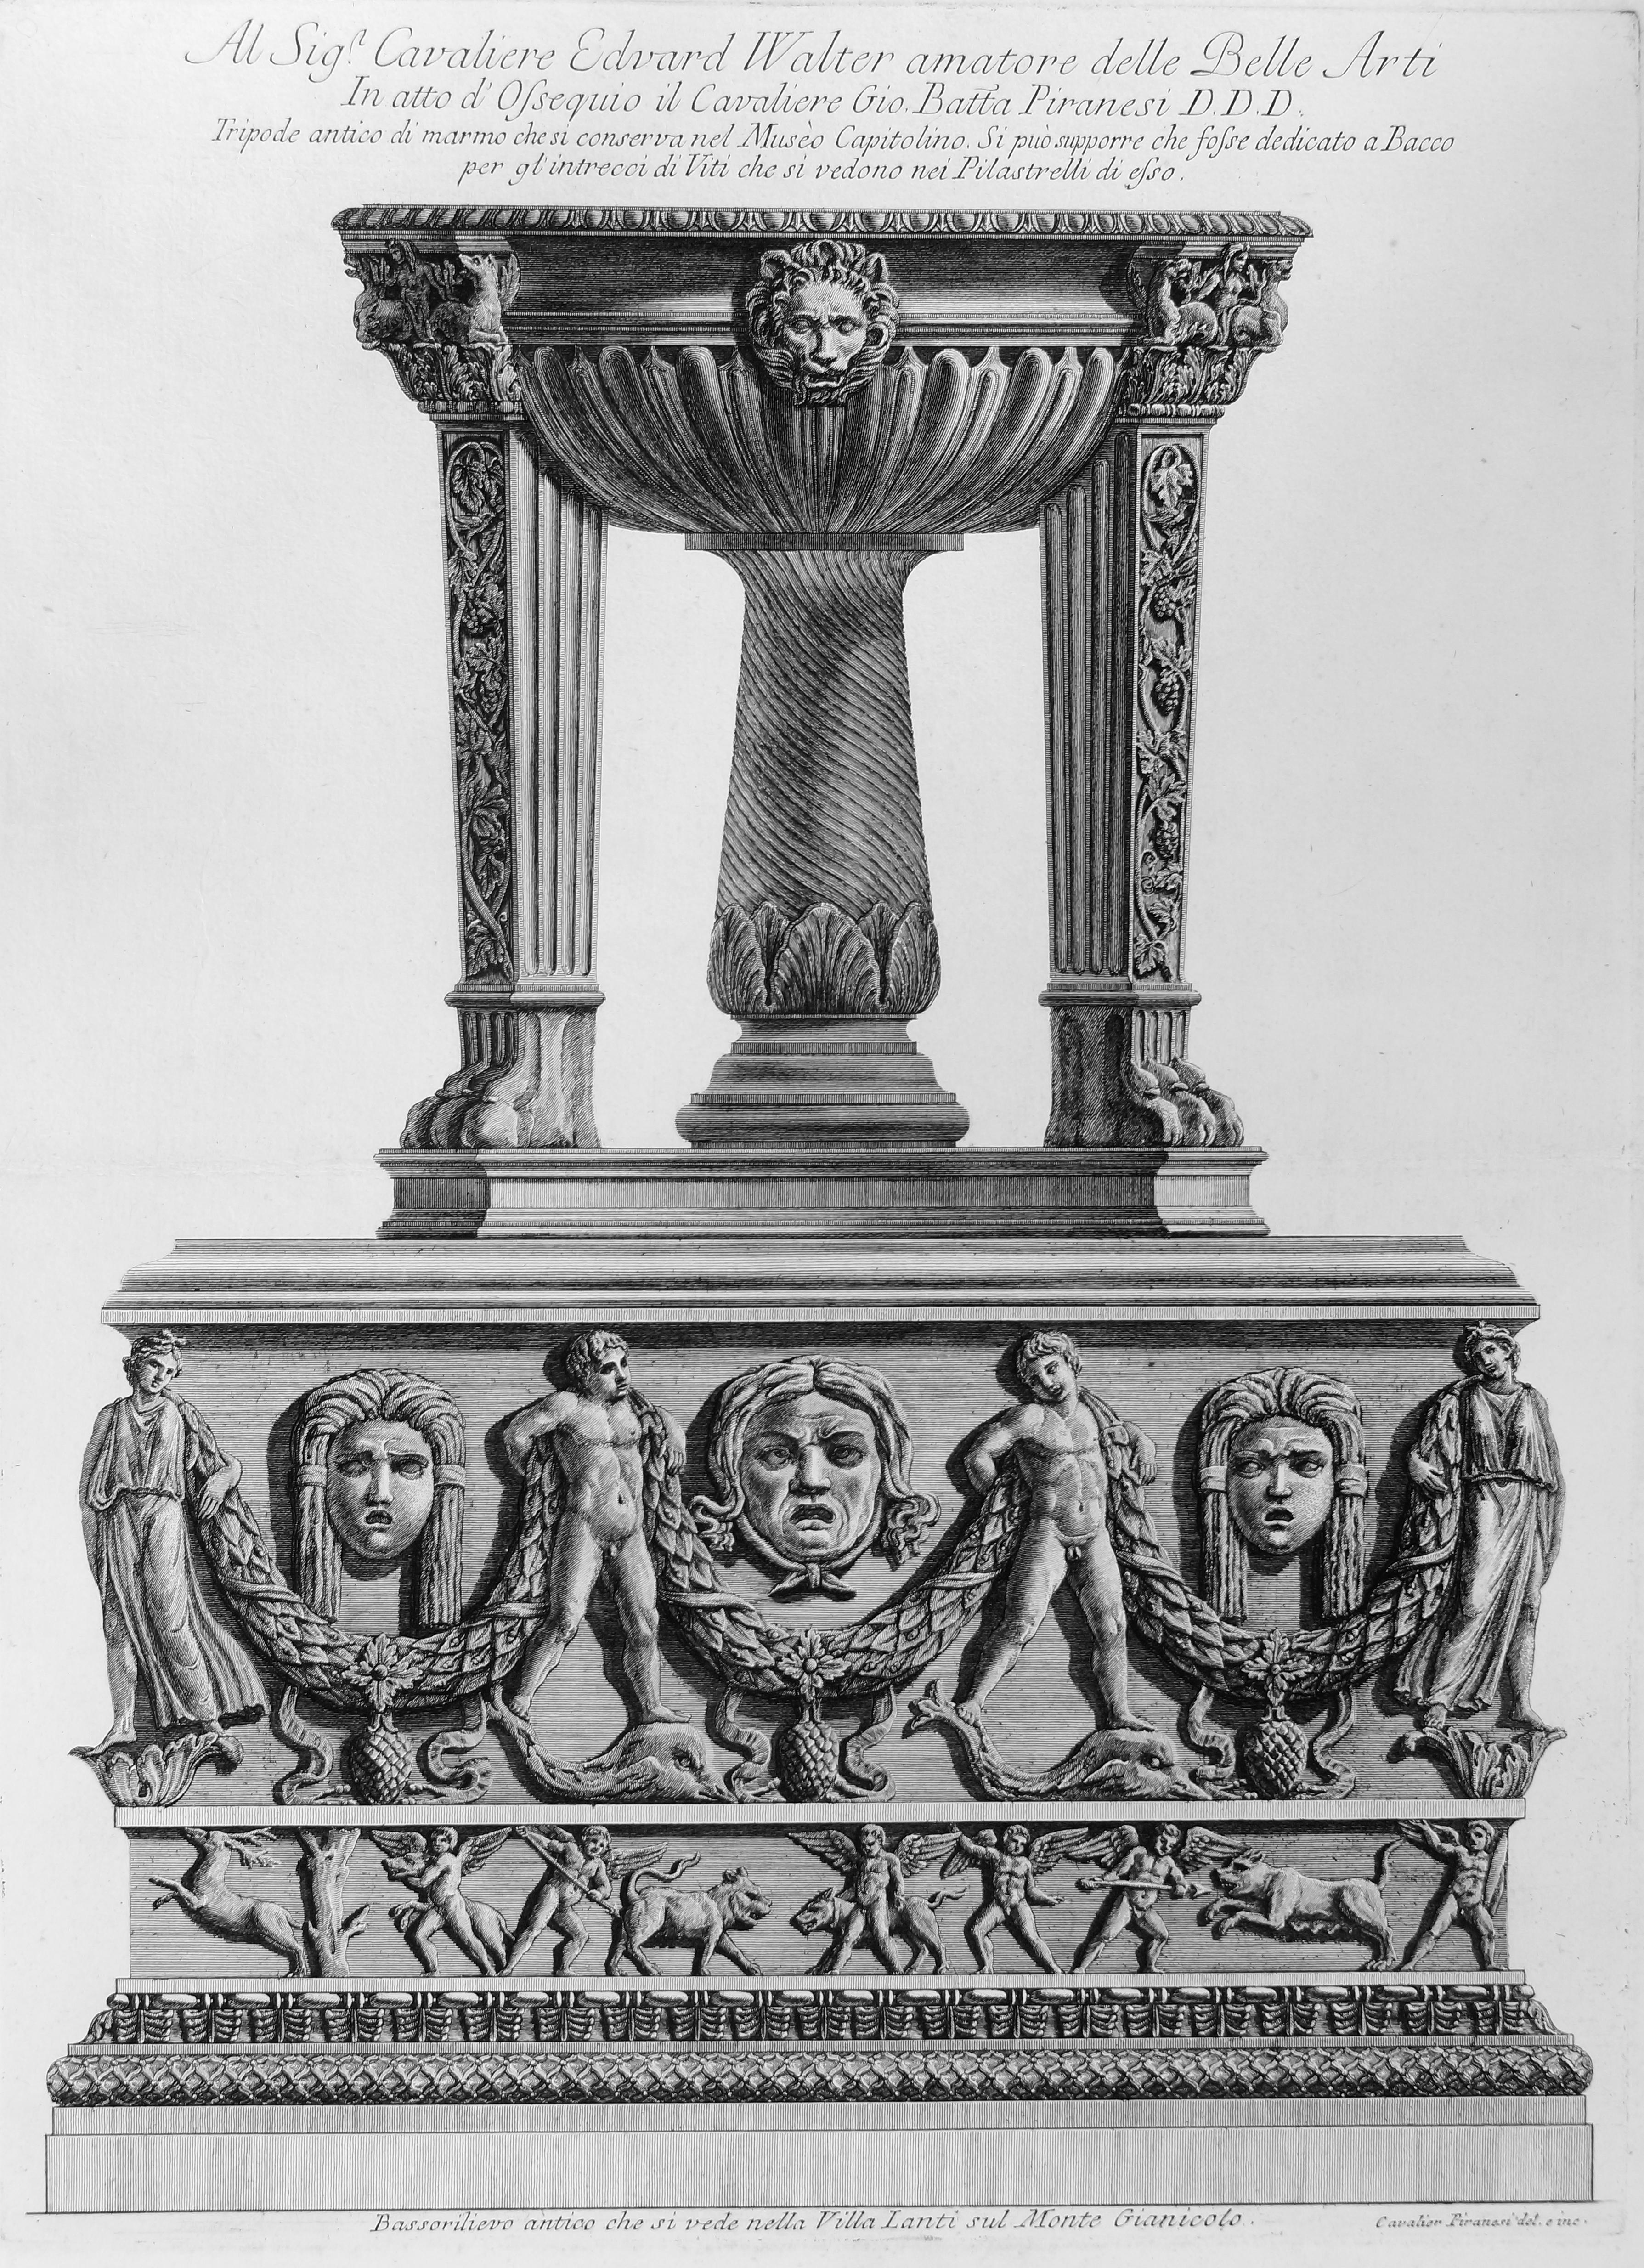 Giovanni Battista Piranesi Figurative Print -  Tripode antico di marmo che si conserva nel Museo Capitolino - Etching 1778